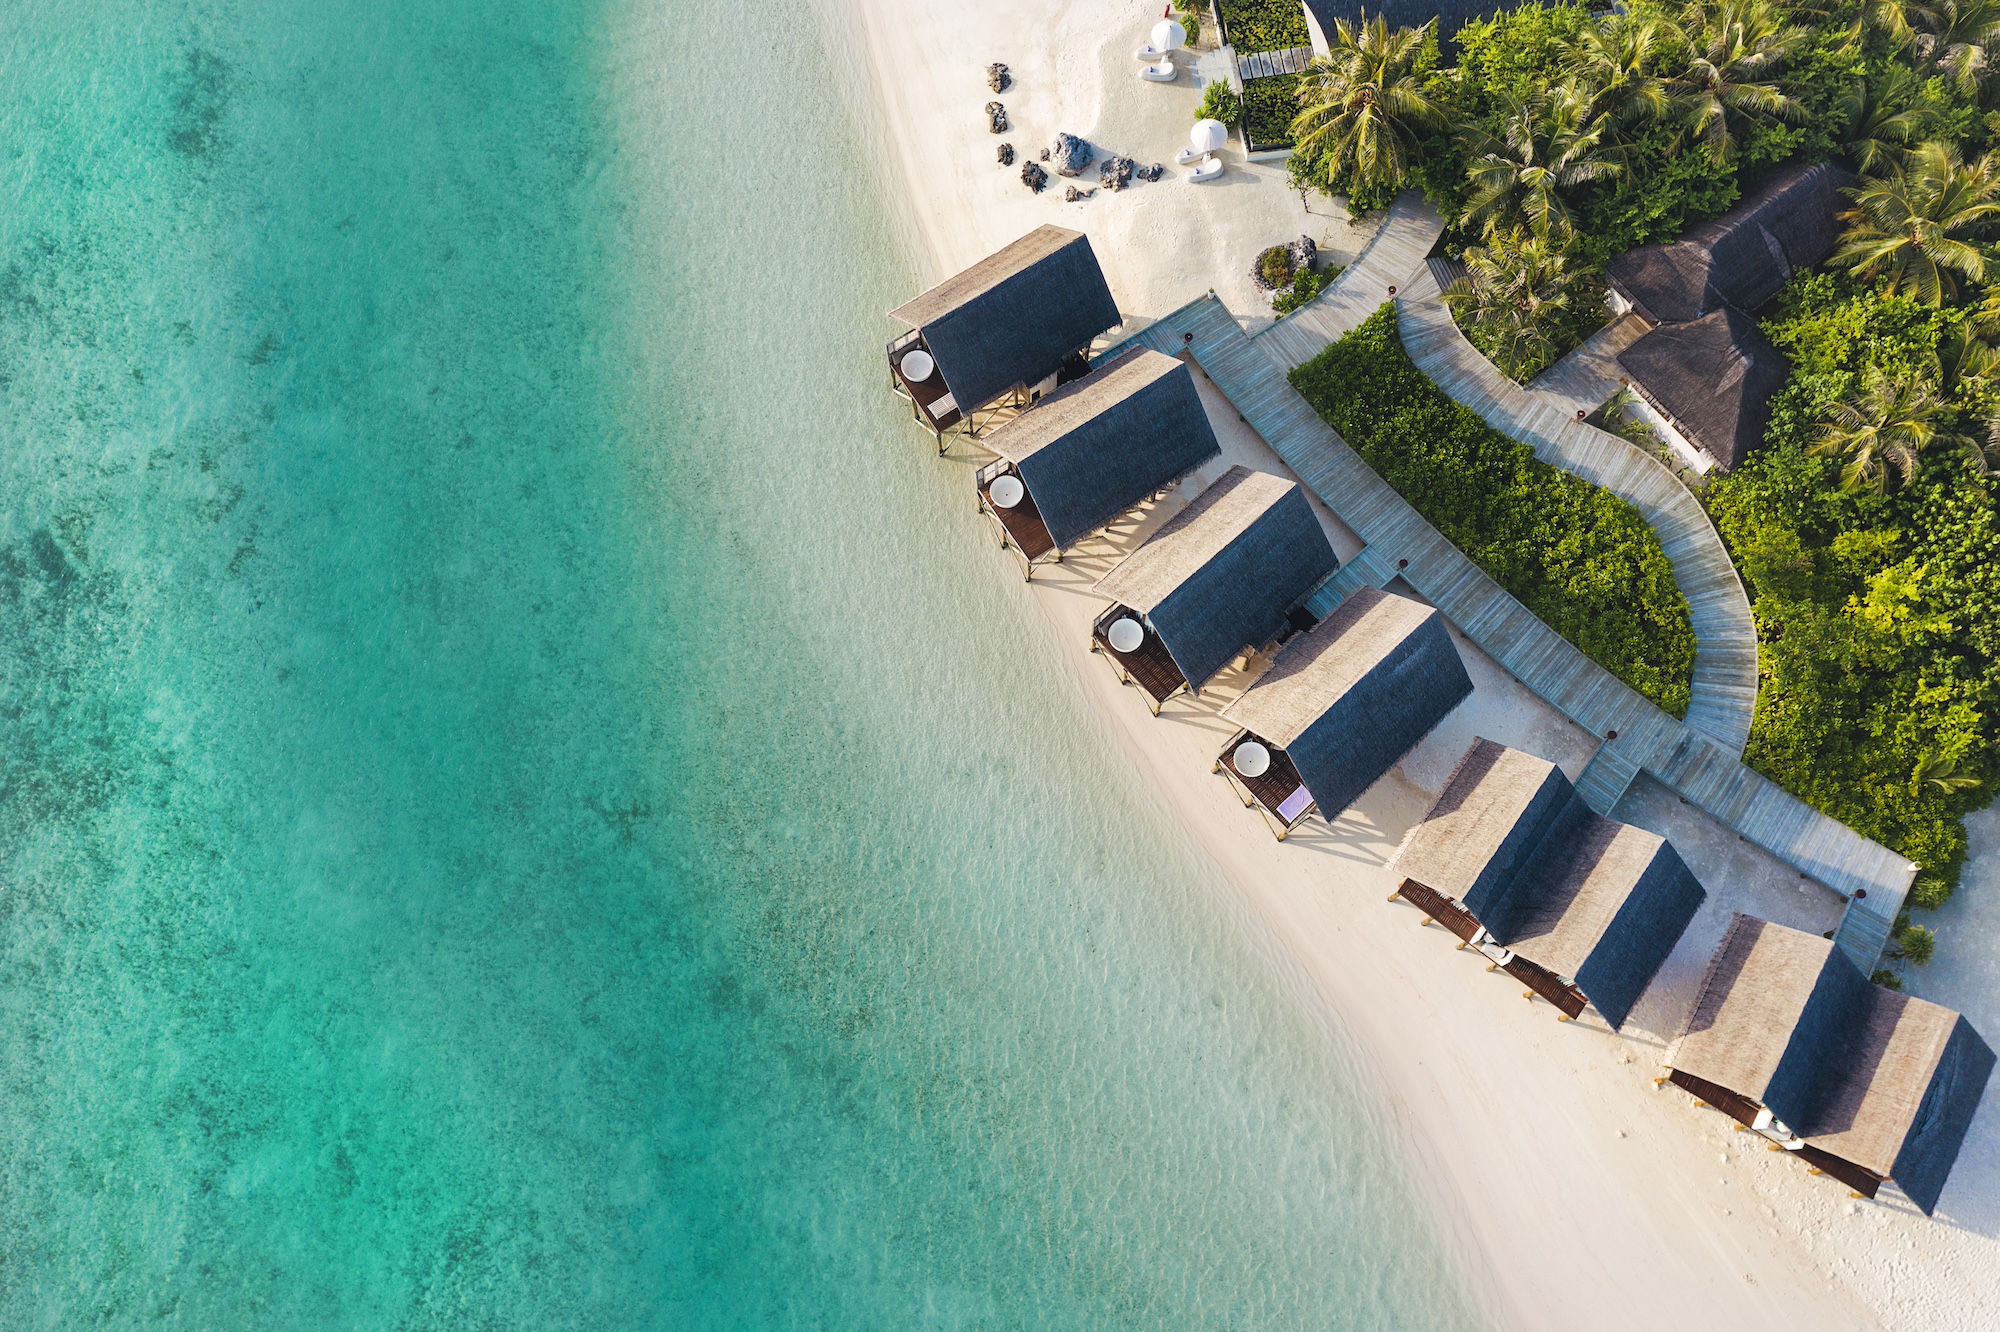 Win a trip to the Maldives